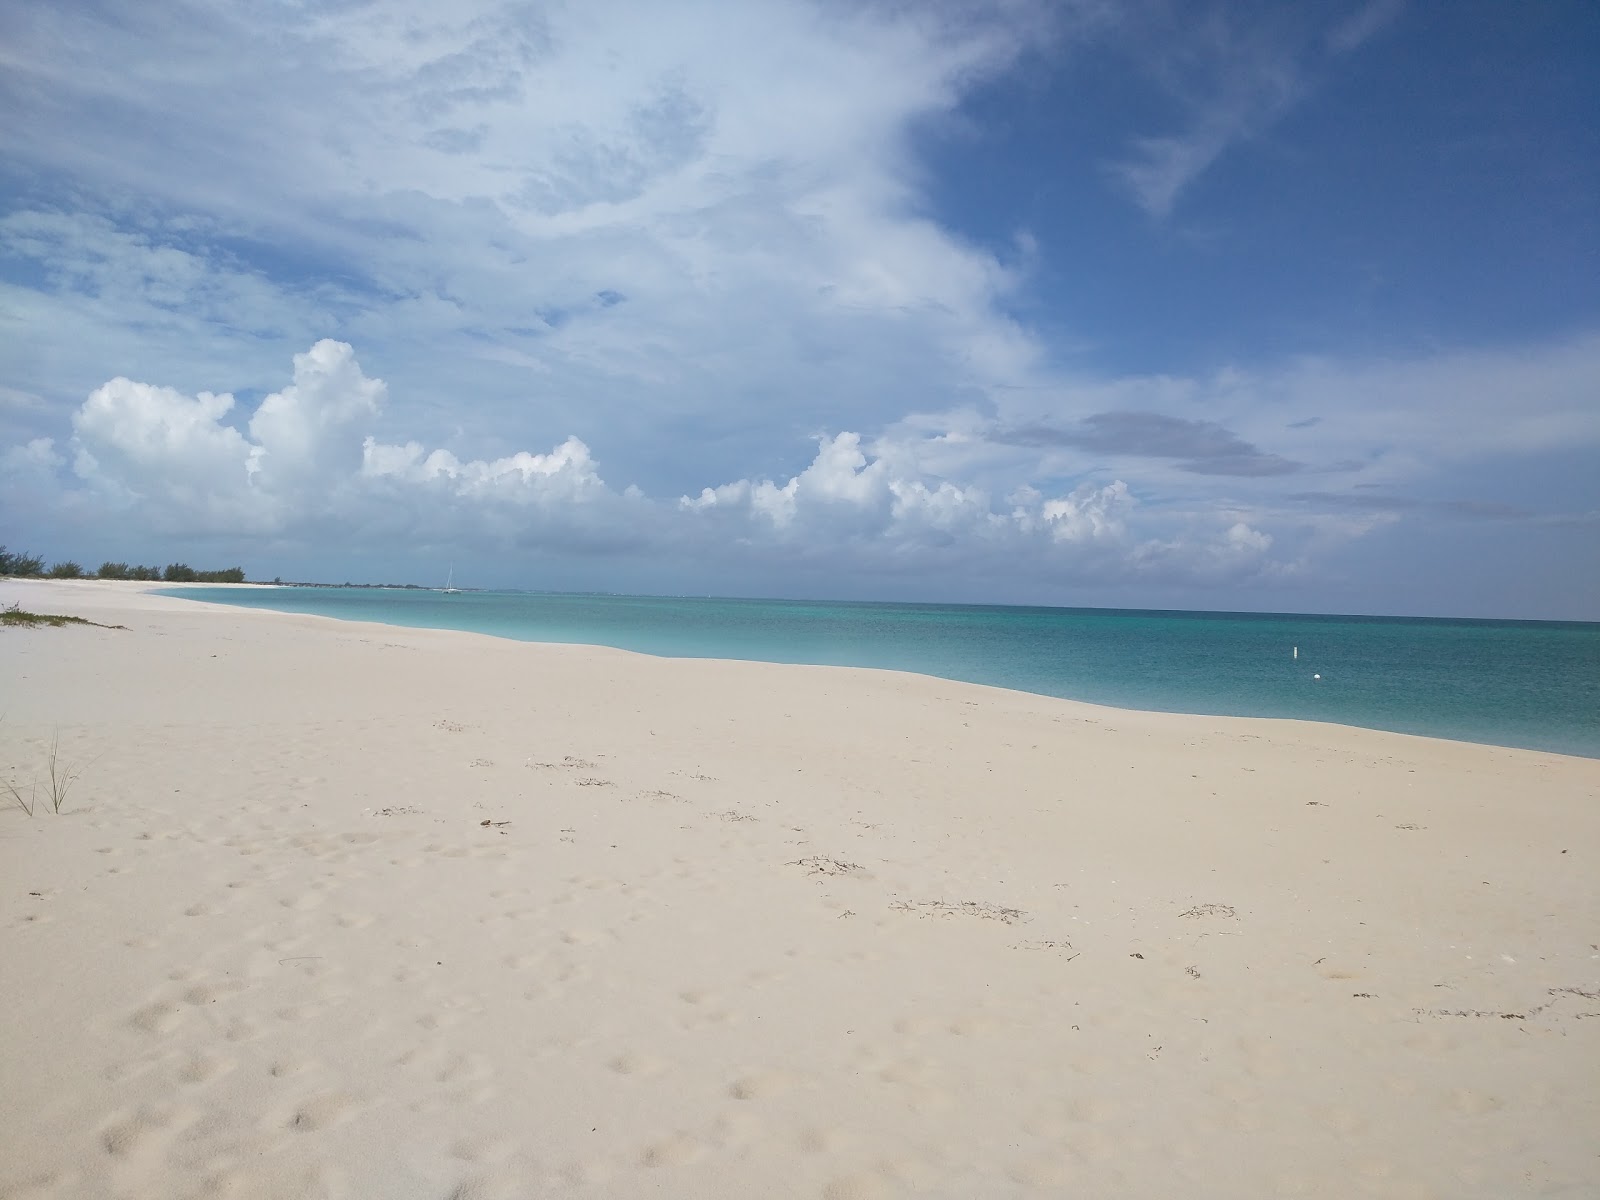 Photo de Pine Cay beach - endroit populaire parmi les connaisseurs de la détente